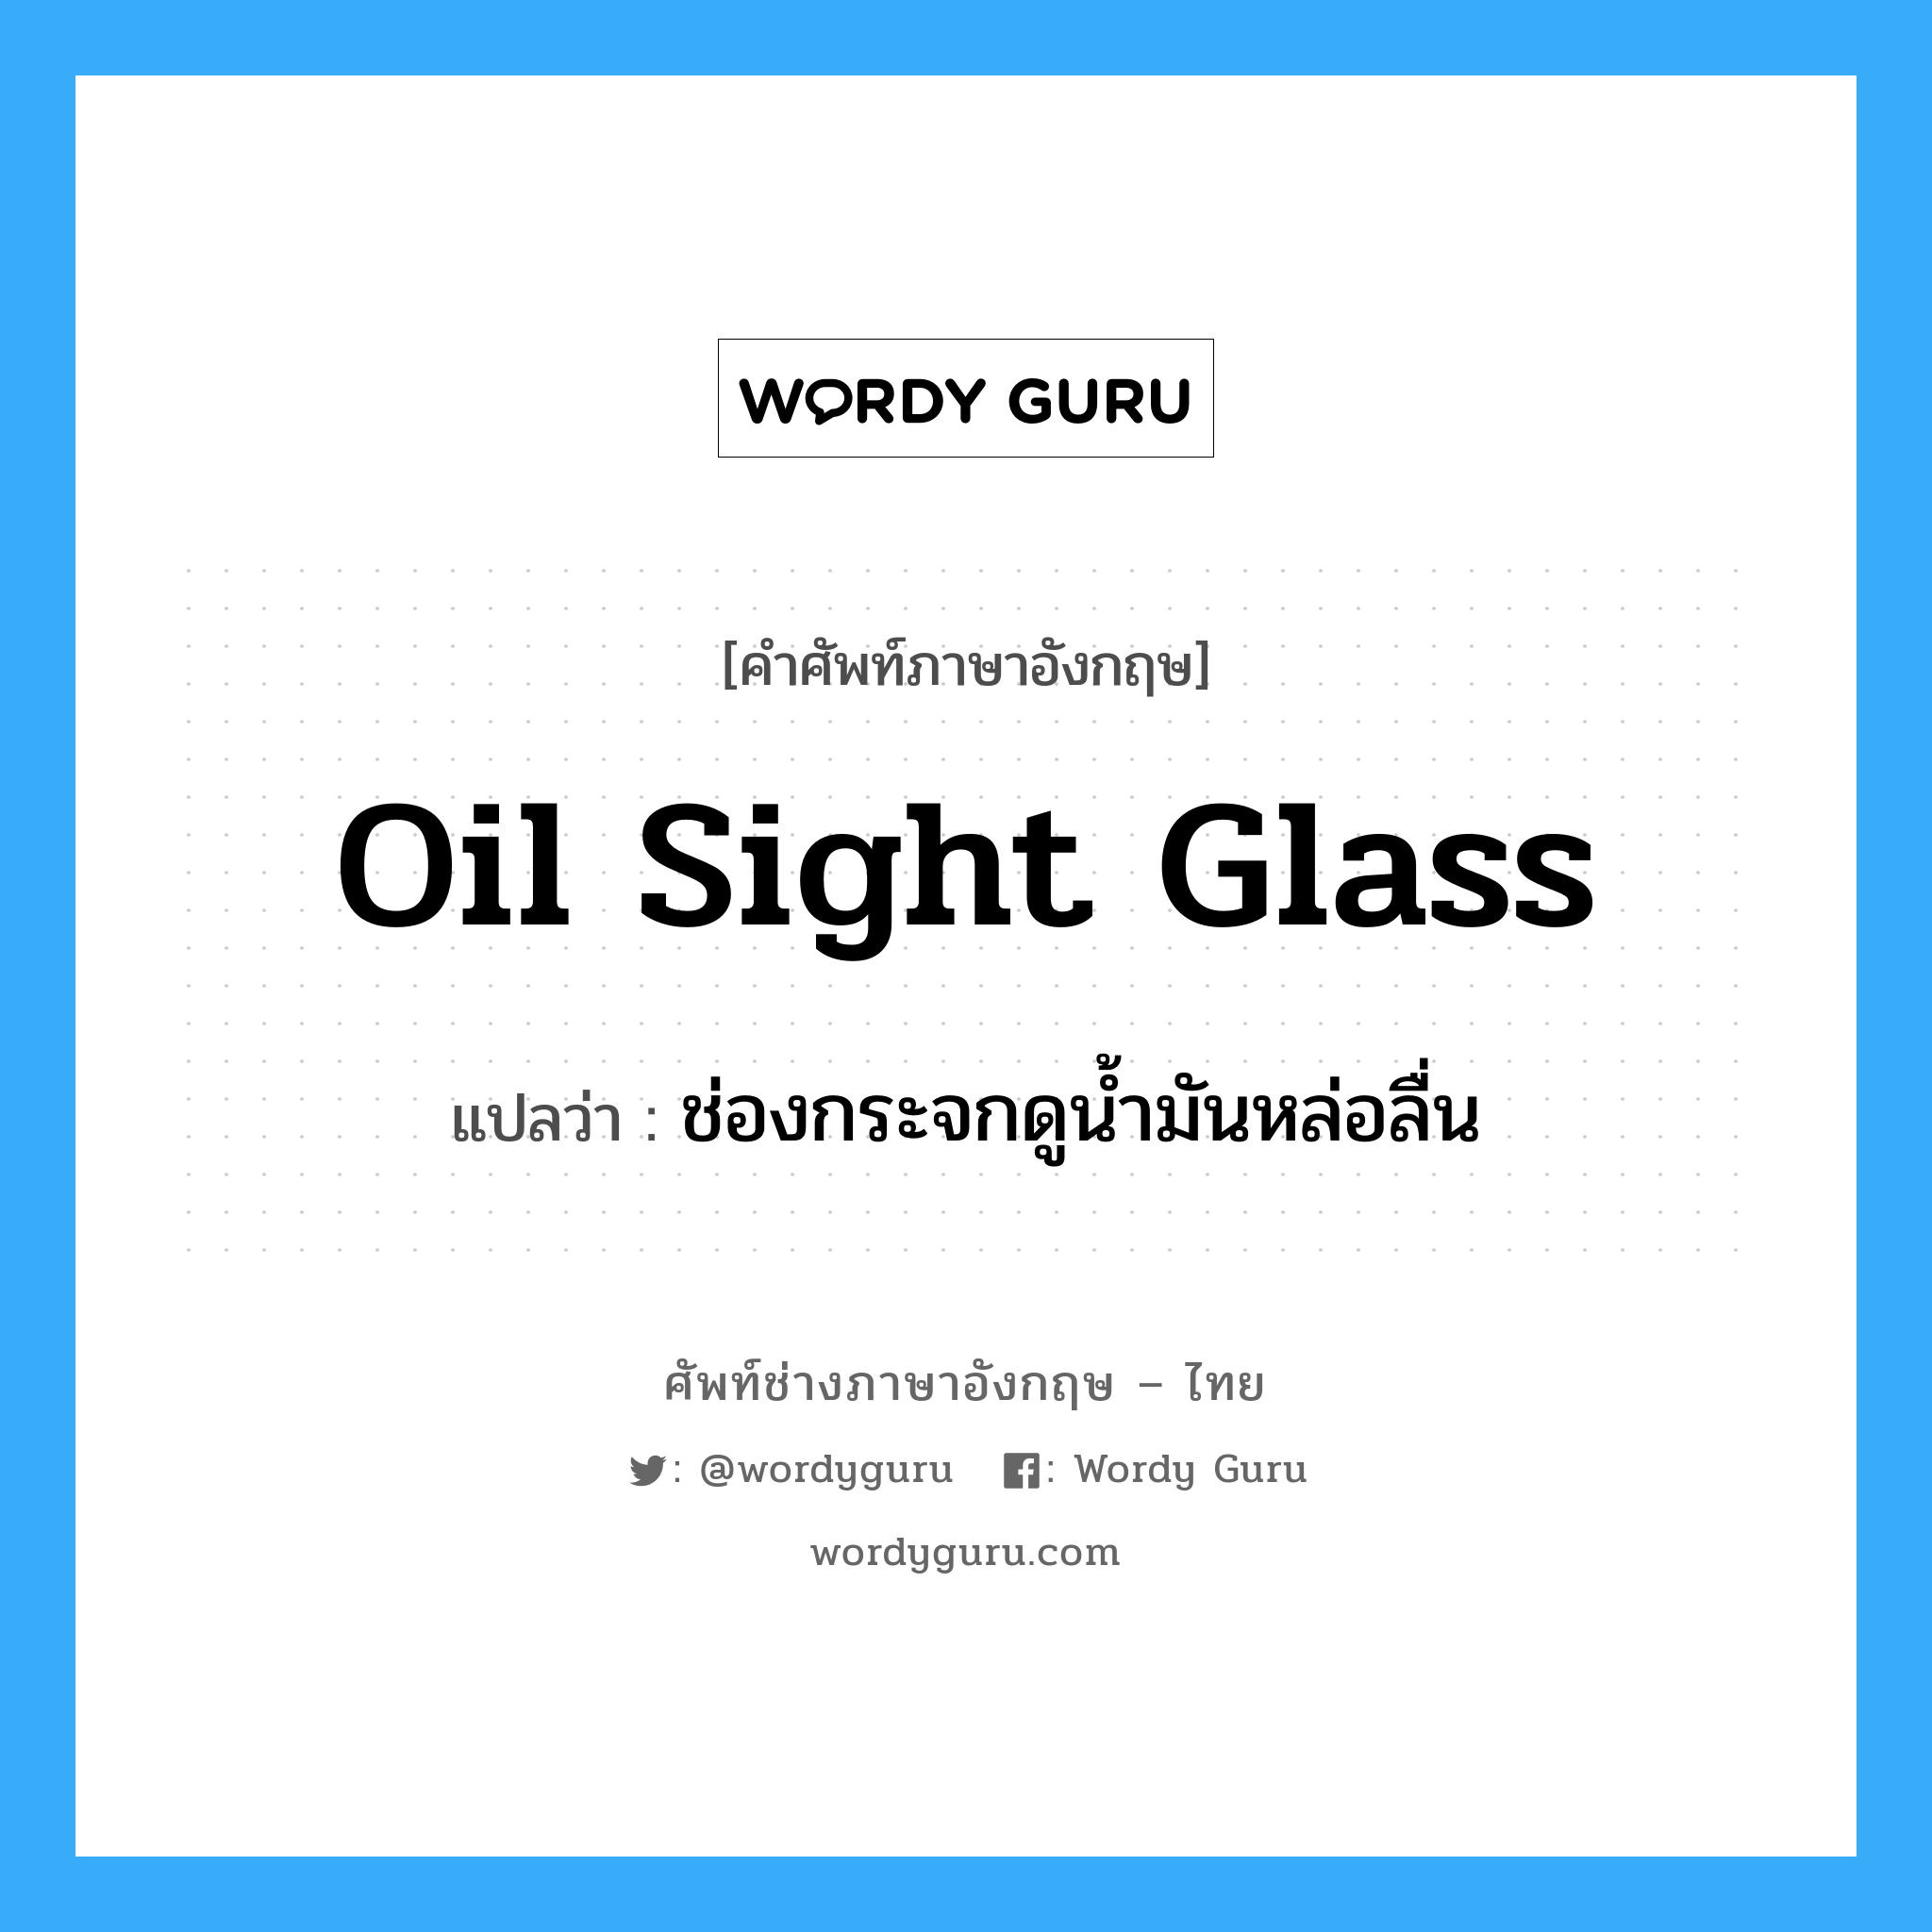 ช่องกระจกดูน้ำมันหล่อลื่น ภาษาอังกฤษ?, คำศัพท์ช่างภาษาอังกฤษ - ไทย ช่องกระจกดูน้ำมันหล่อลื่น คำศัพท์ภาษาอังกฤษ ช่องกระจกดูน้ำมันหล่อลื่น แปลว่า oil sight glass